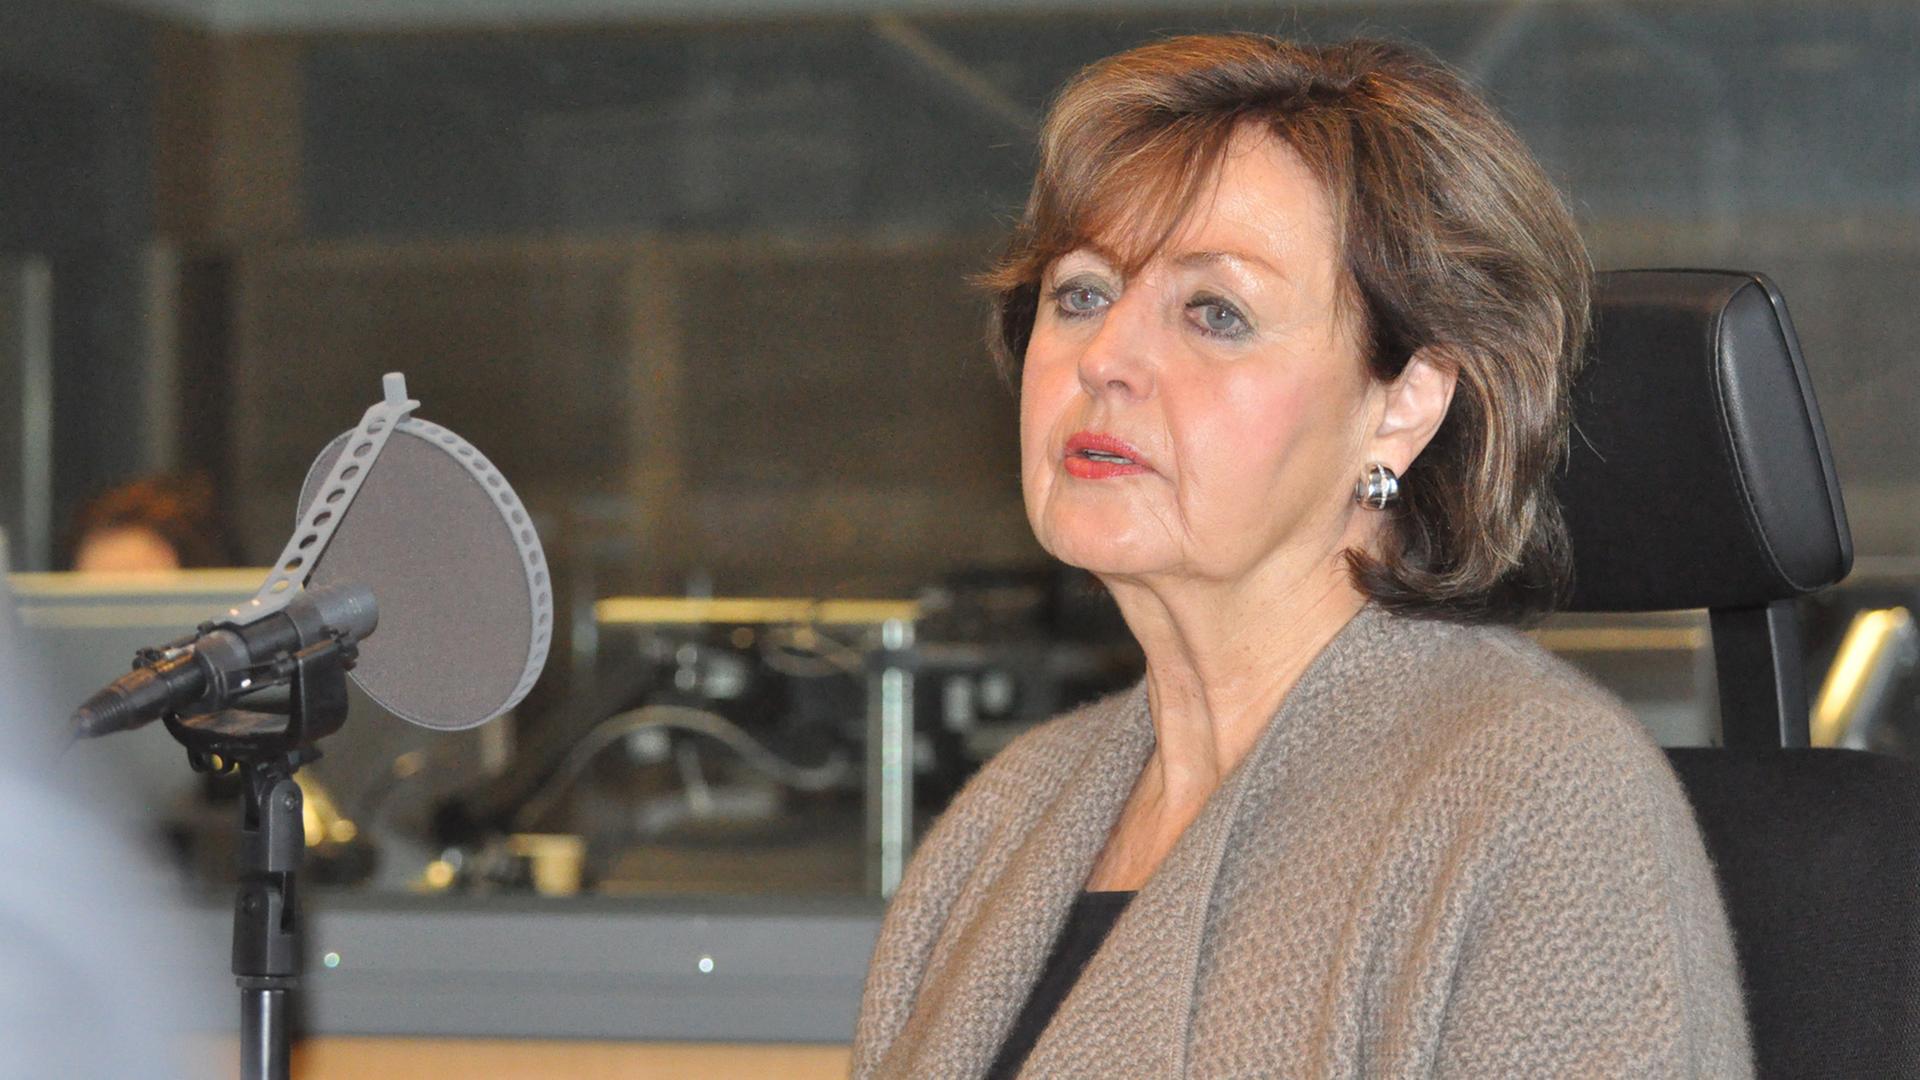 Gisela Friedrichsen, Gerichtsreporterin beim "Spiegel", in der Sendung "Im Gespräch" im Deutschlandradio Kultur